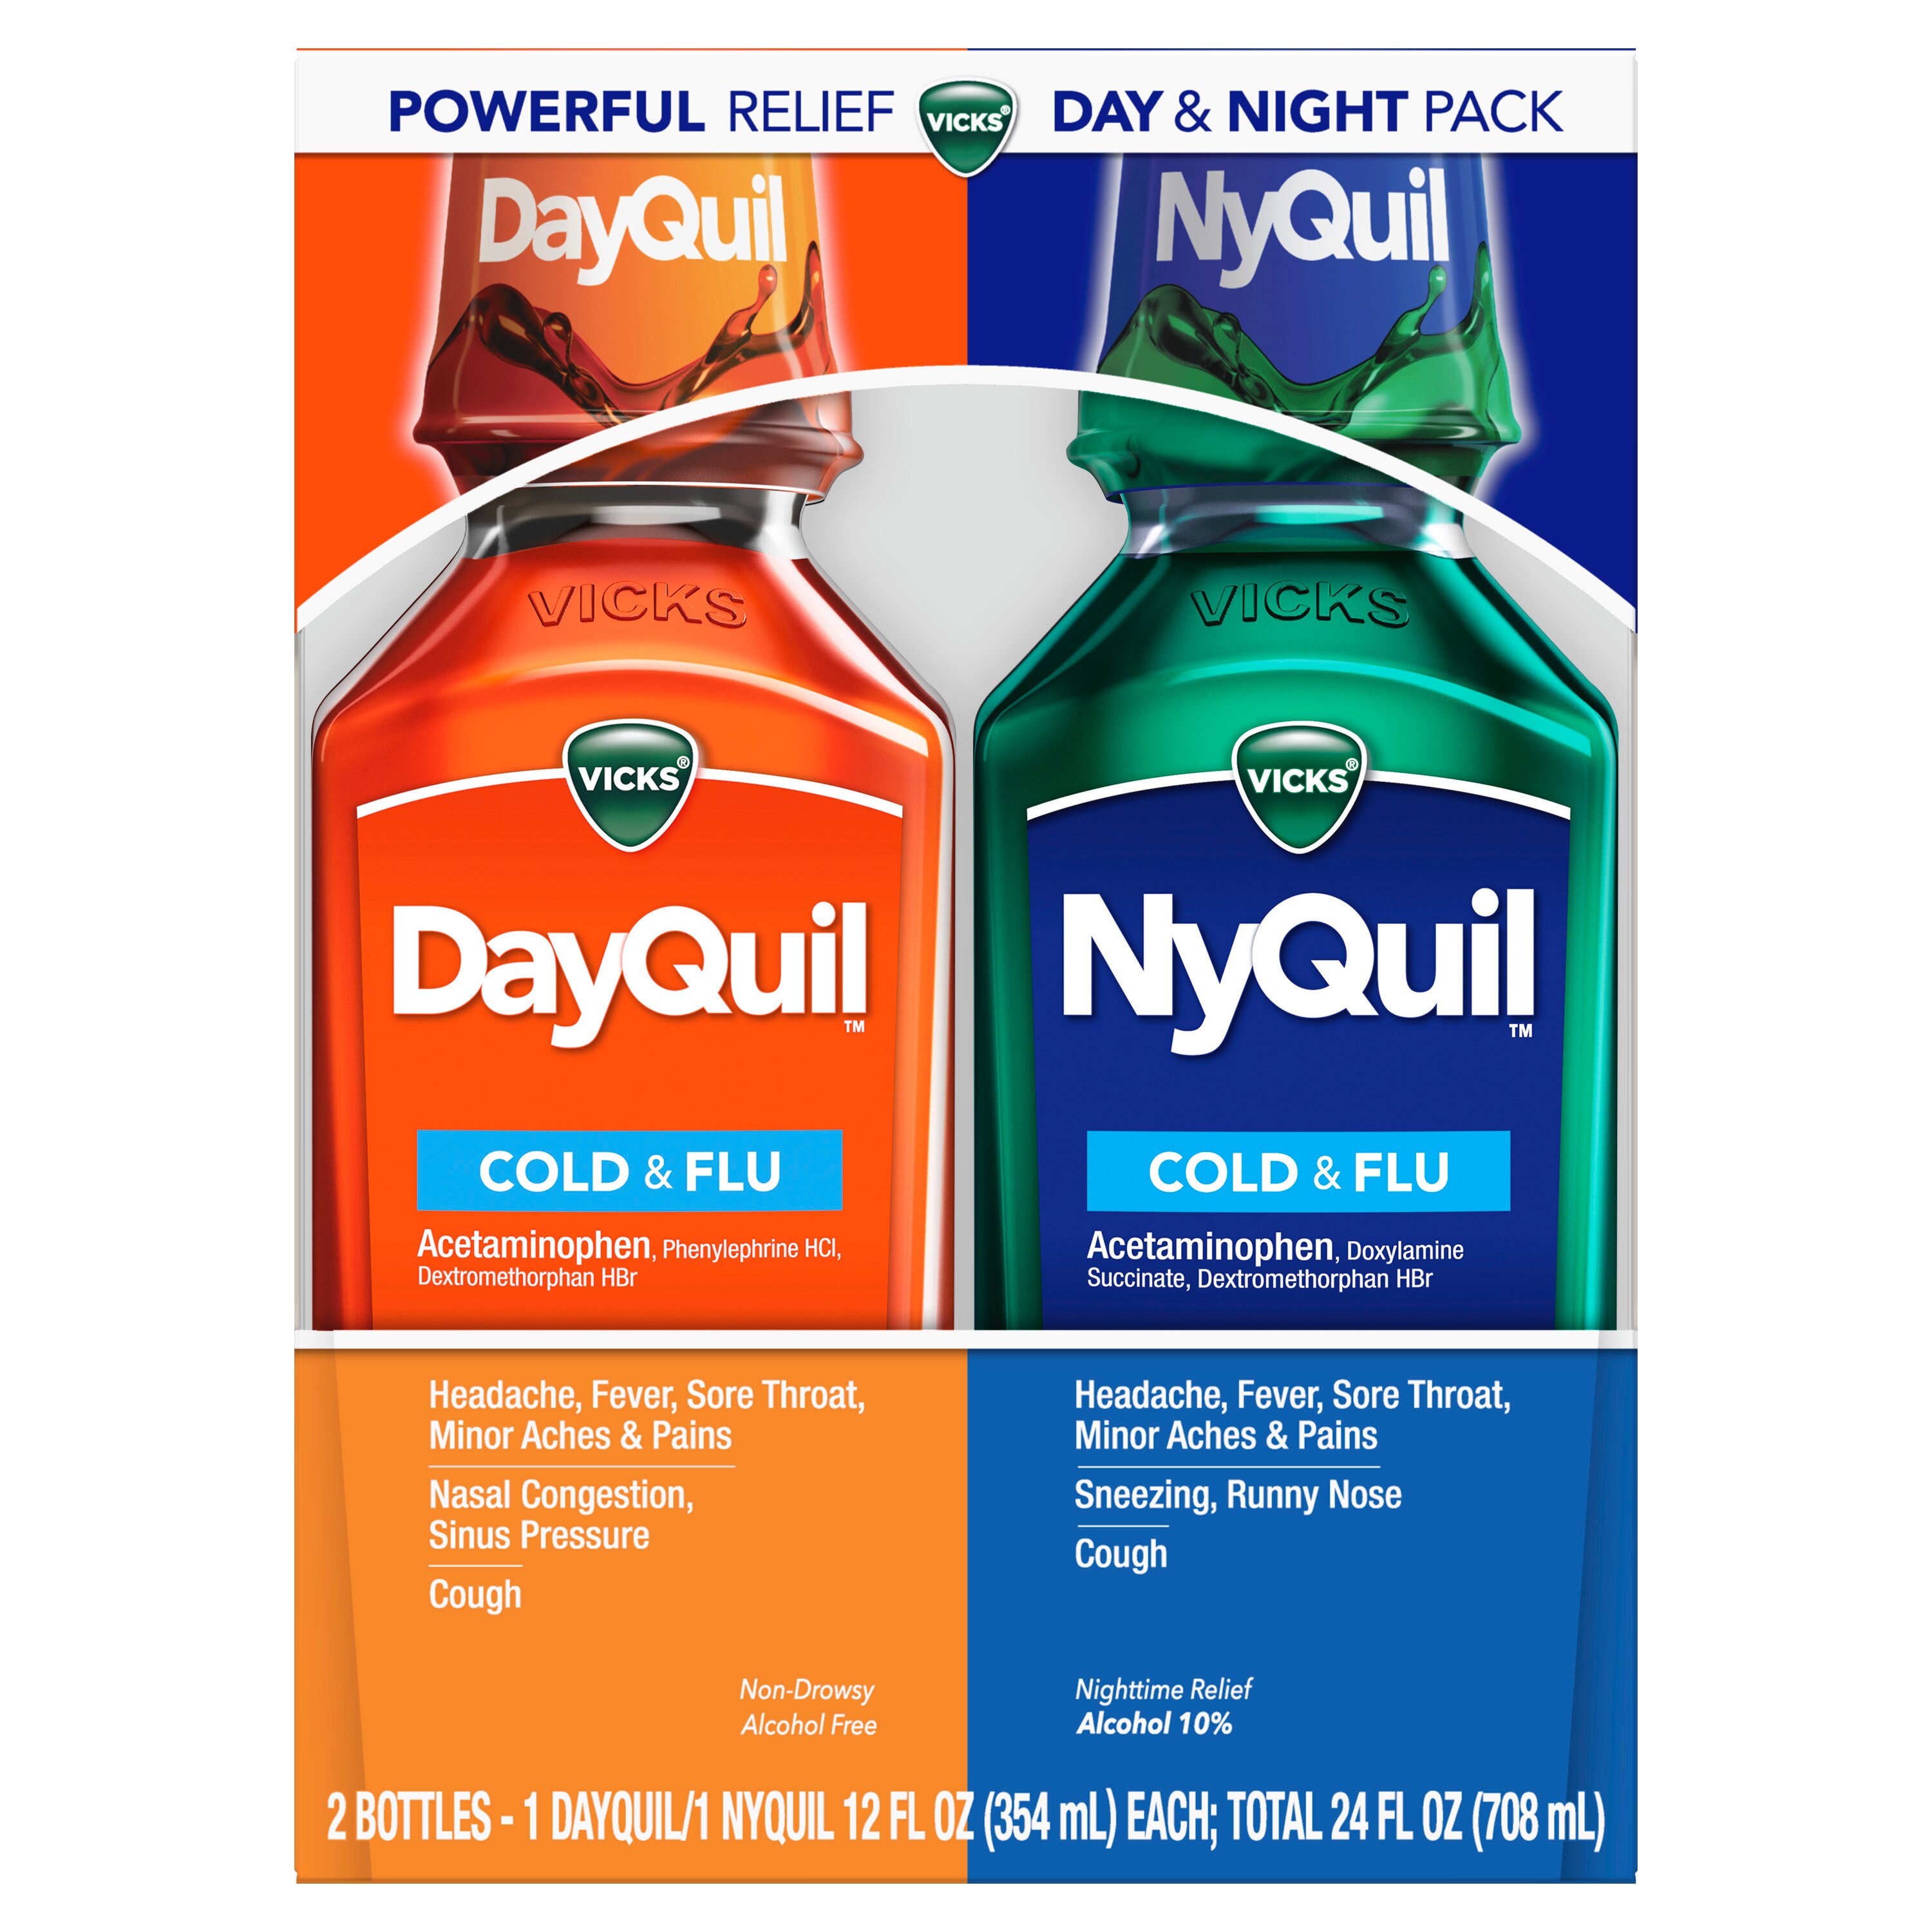 Vicks DayQuil y NyQuil - Medicamento para el resfriado, la gripe y la congestión, alivia la tos, dolor de garganta, fiebre, goteo nasal, para el día y la noche, 24 oz líq.